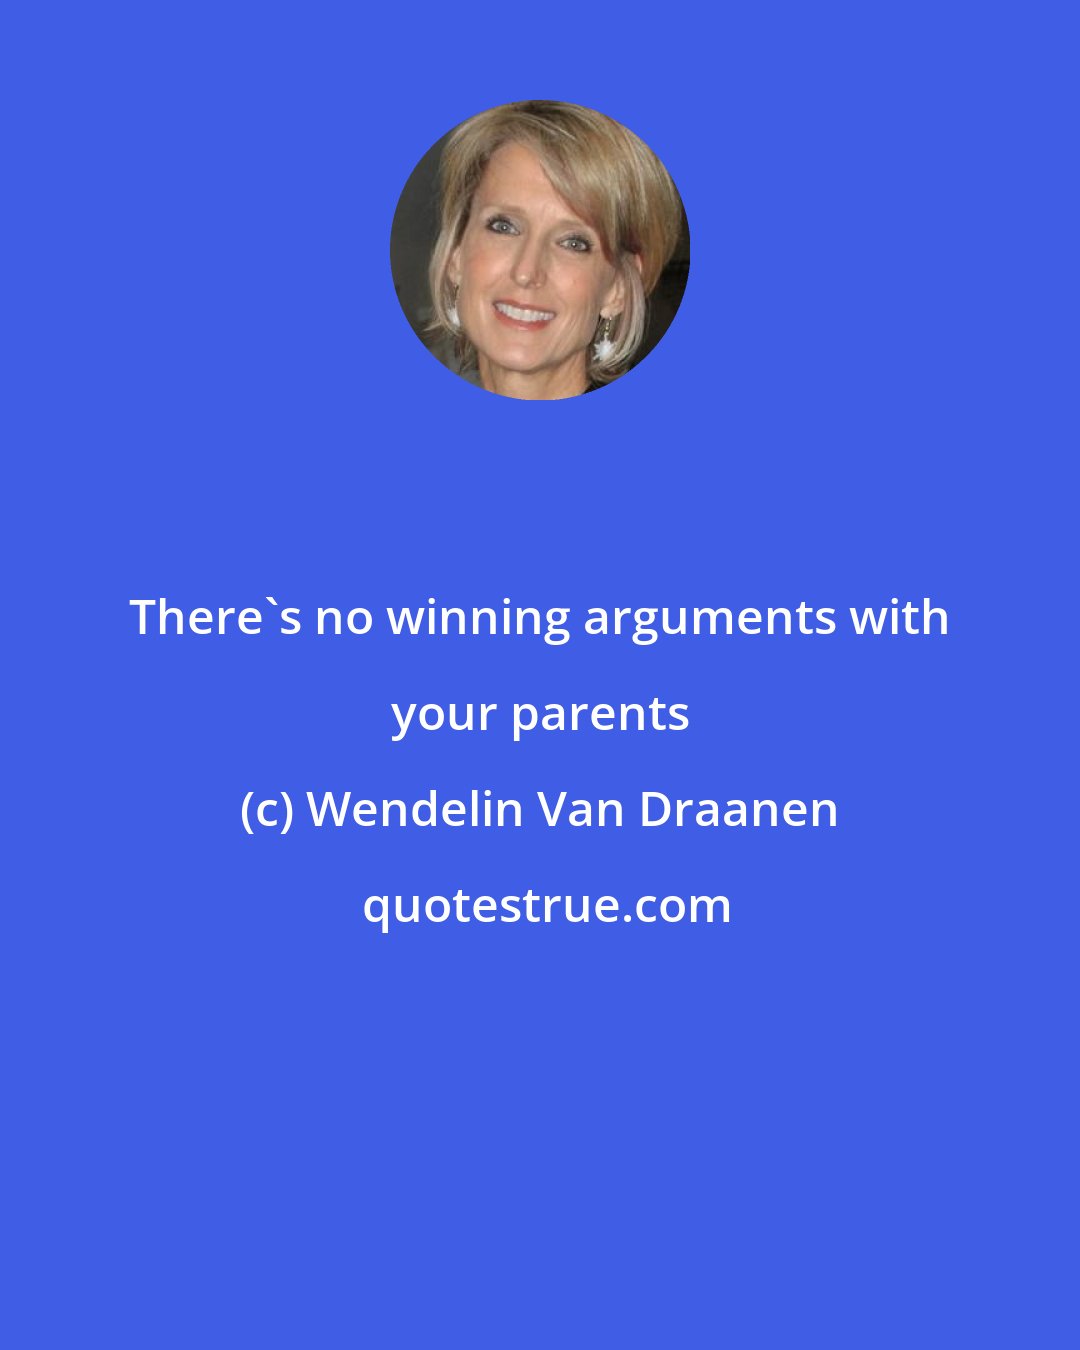 Wendelin Van Draanen: There's no winning arguments with your parents